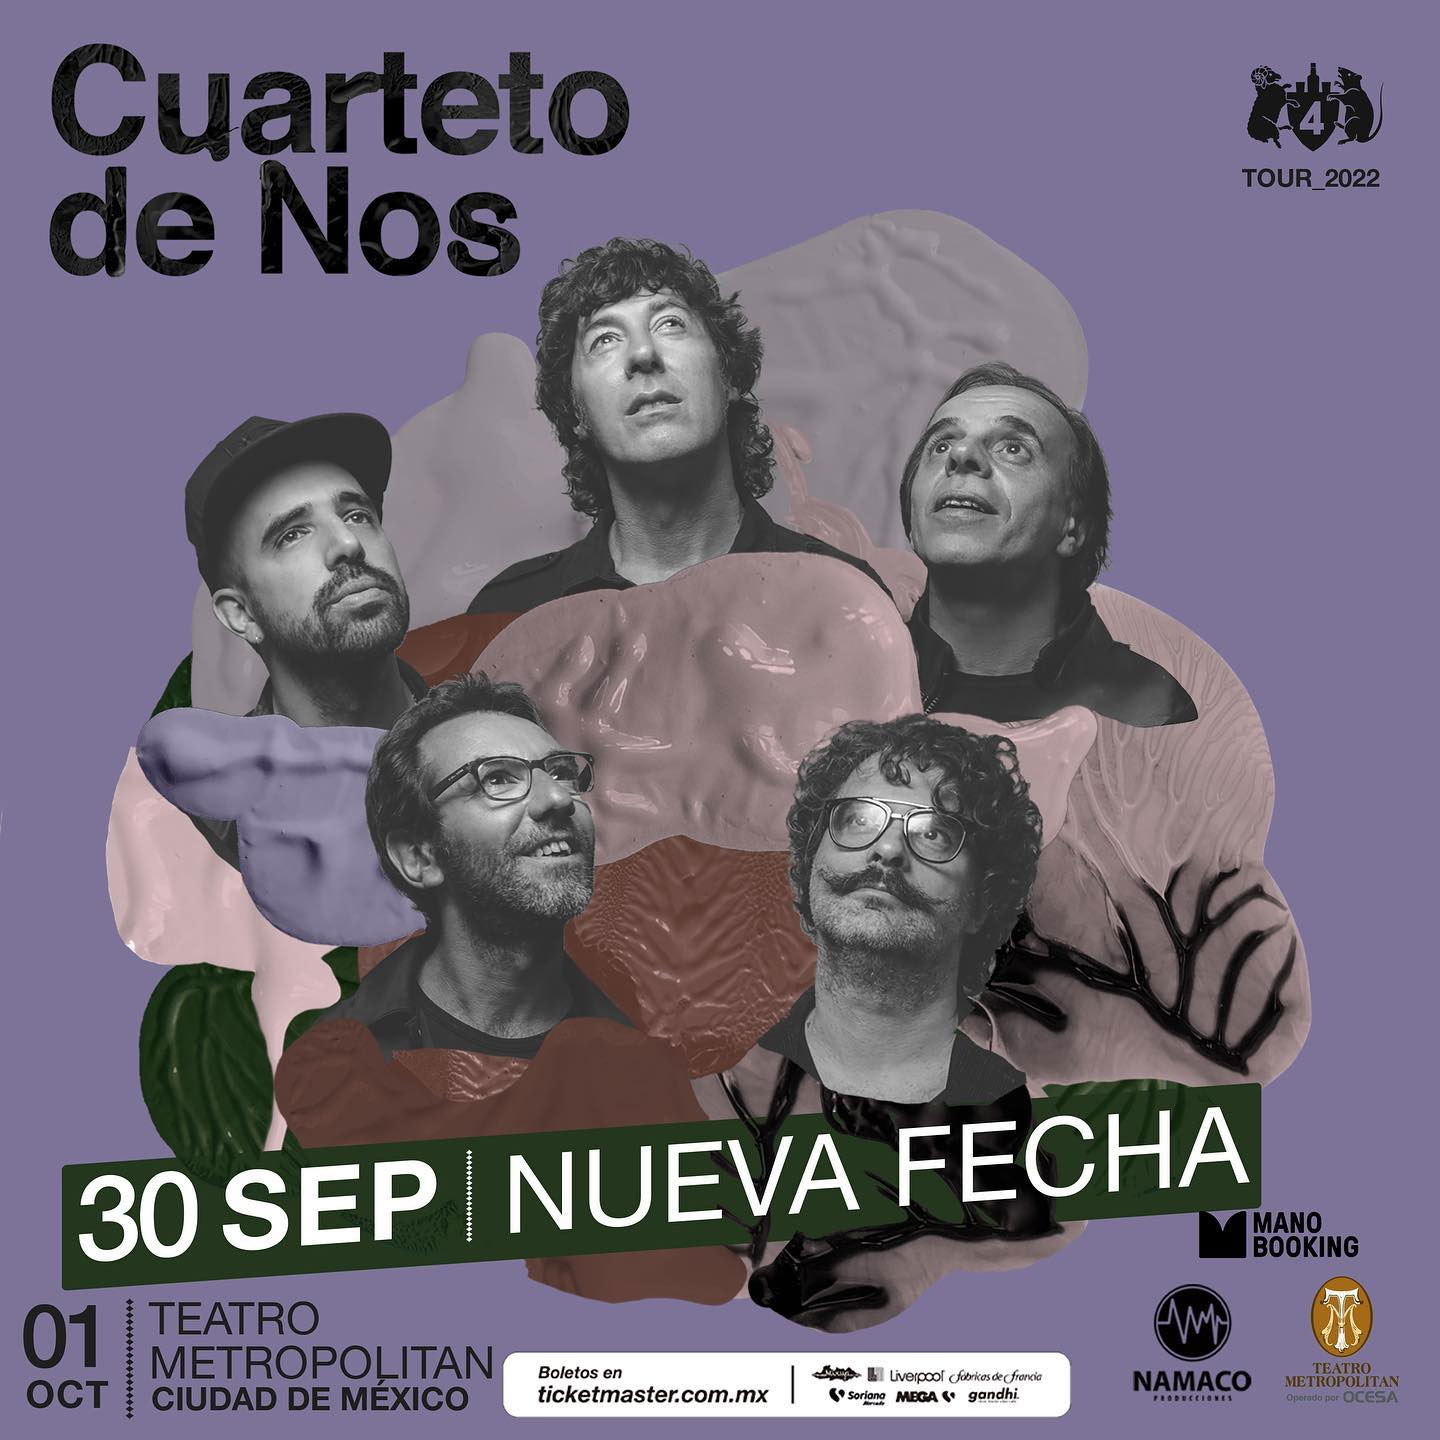 El Cuarteto de Nos de gira en México fechas, lugares y precios